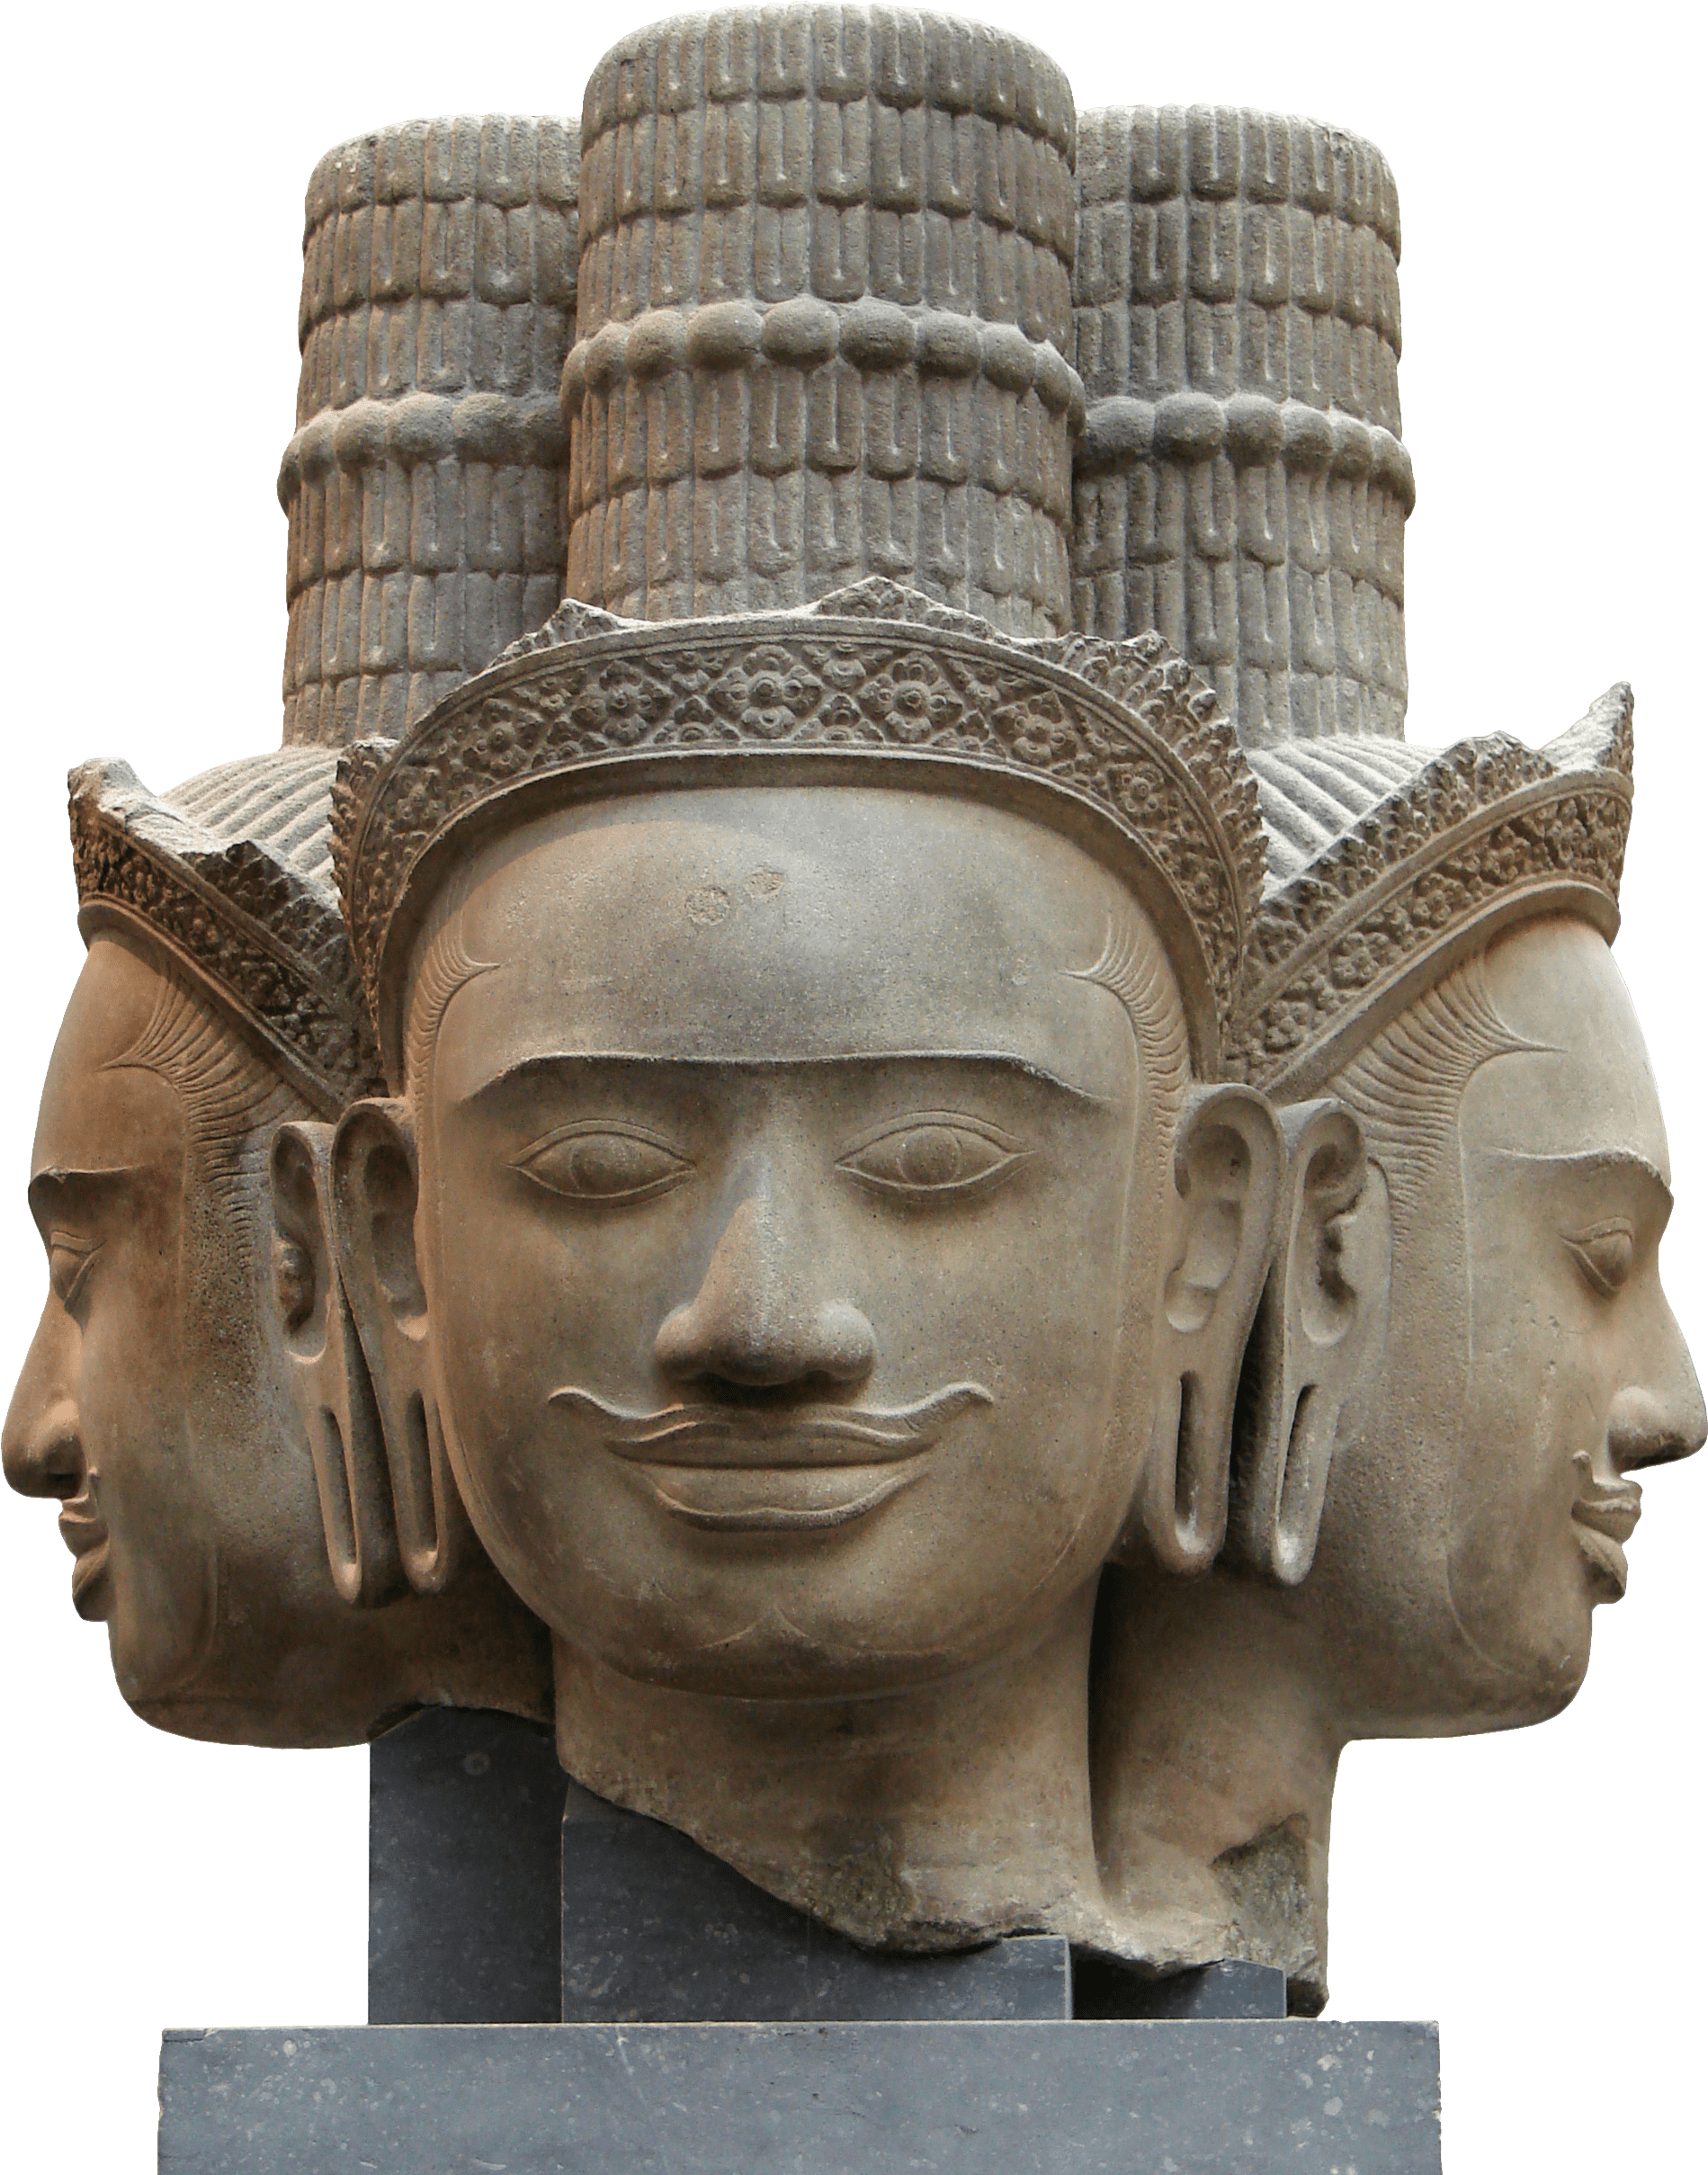 Four Faced Brahma Statue